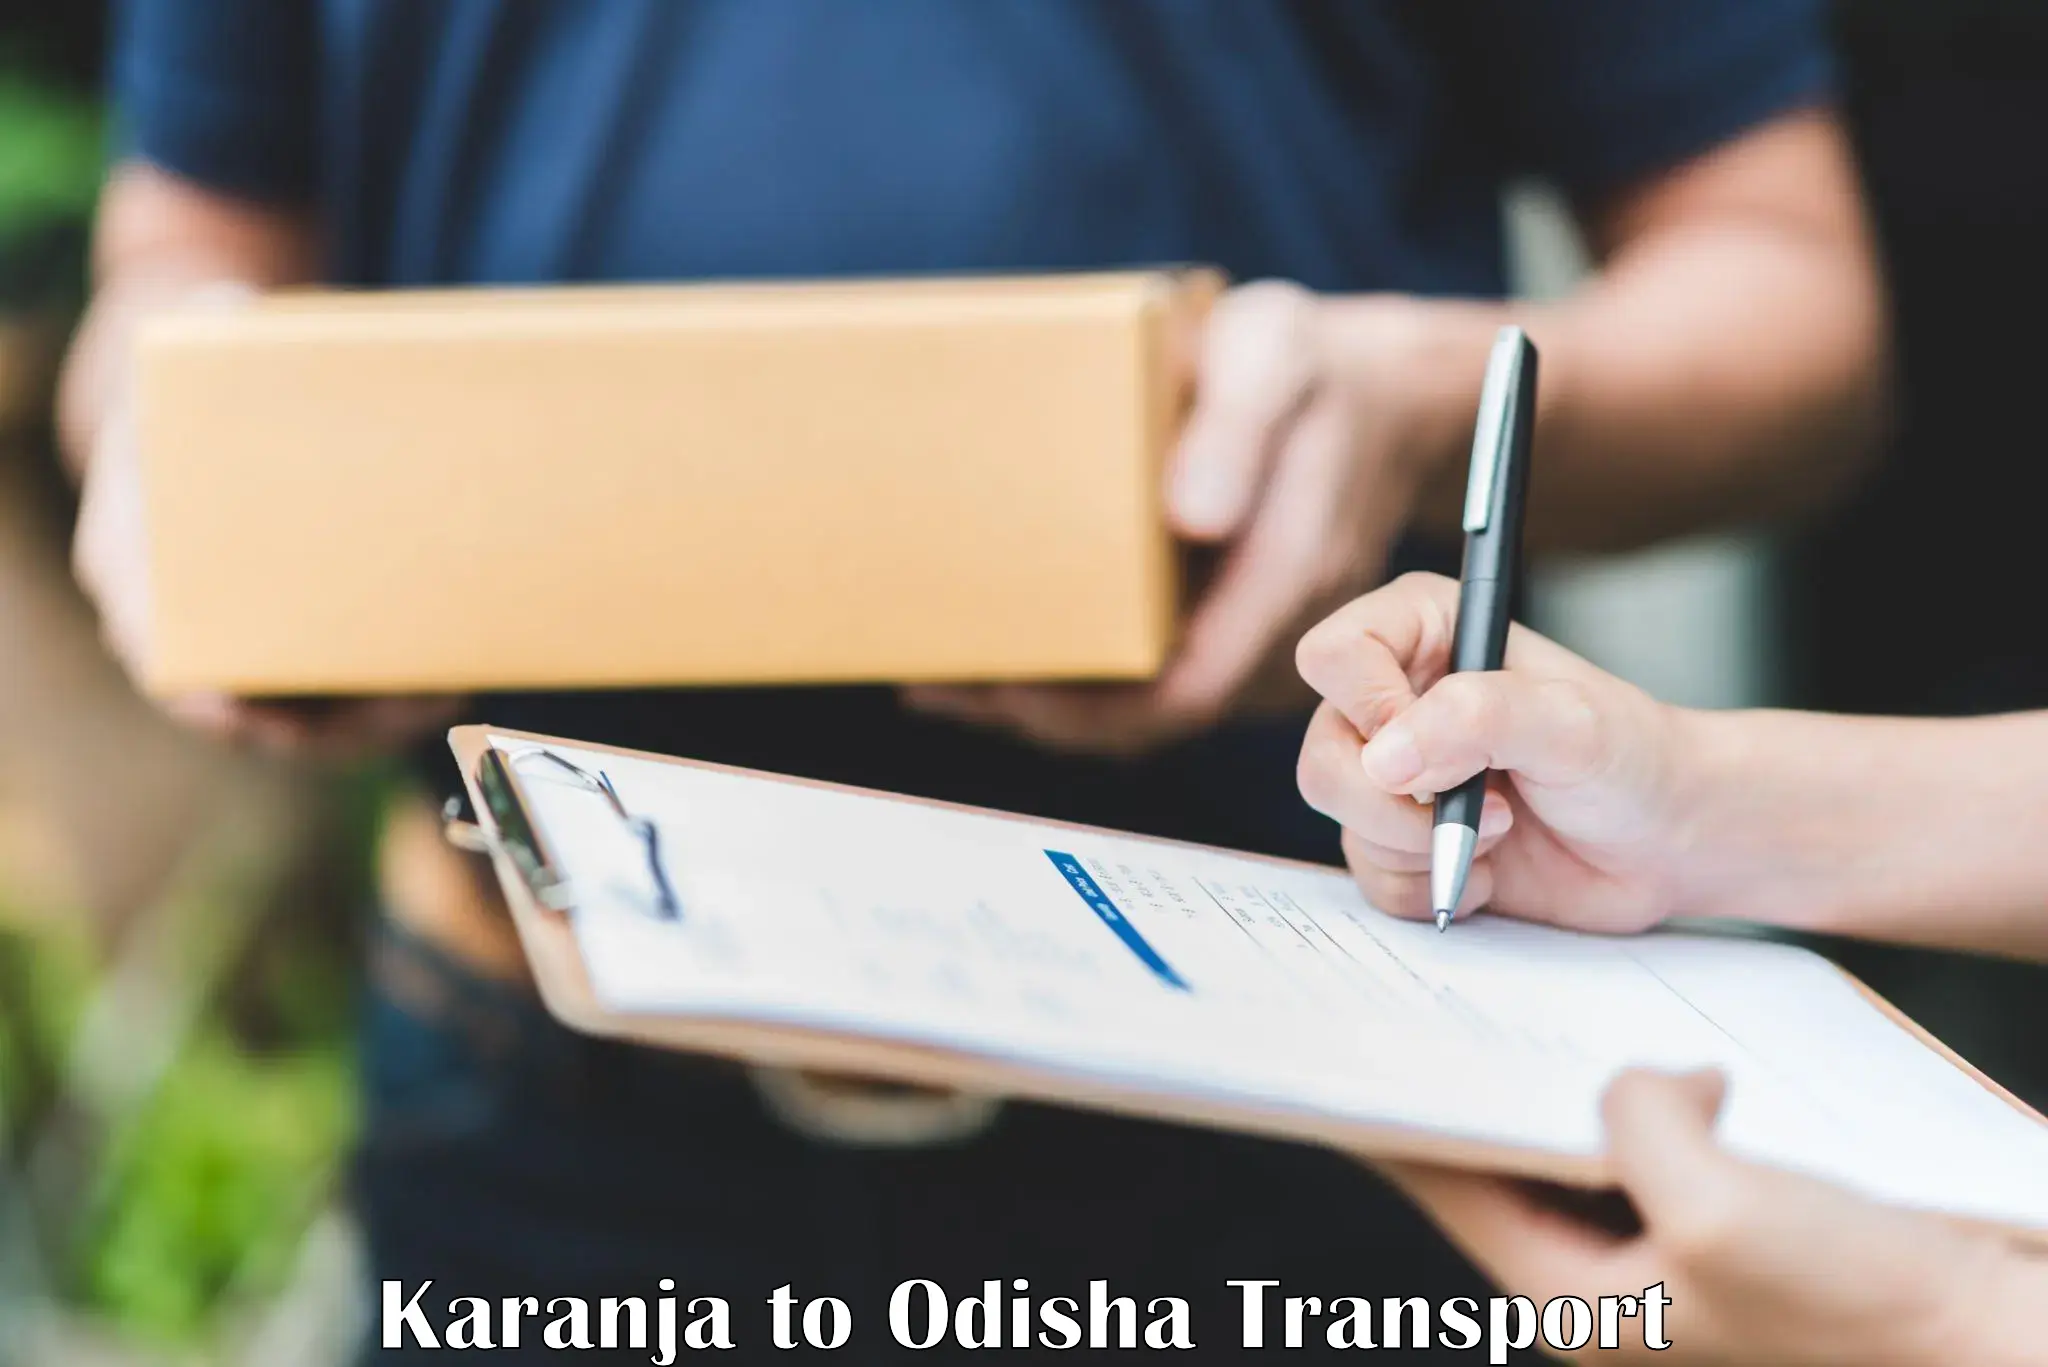 Nearby transport service Karanja to IIT Bhubaneshwar